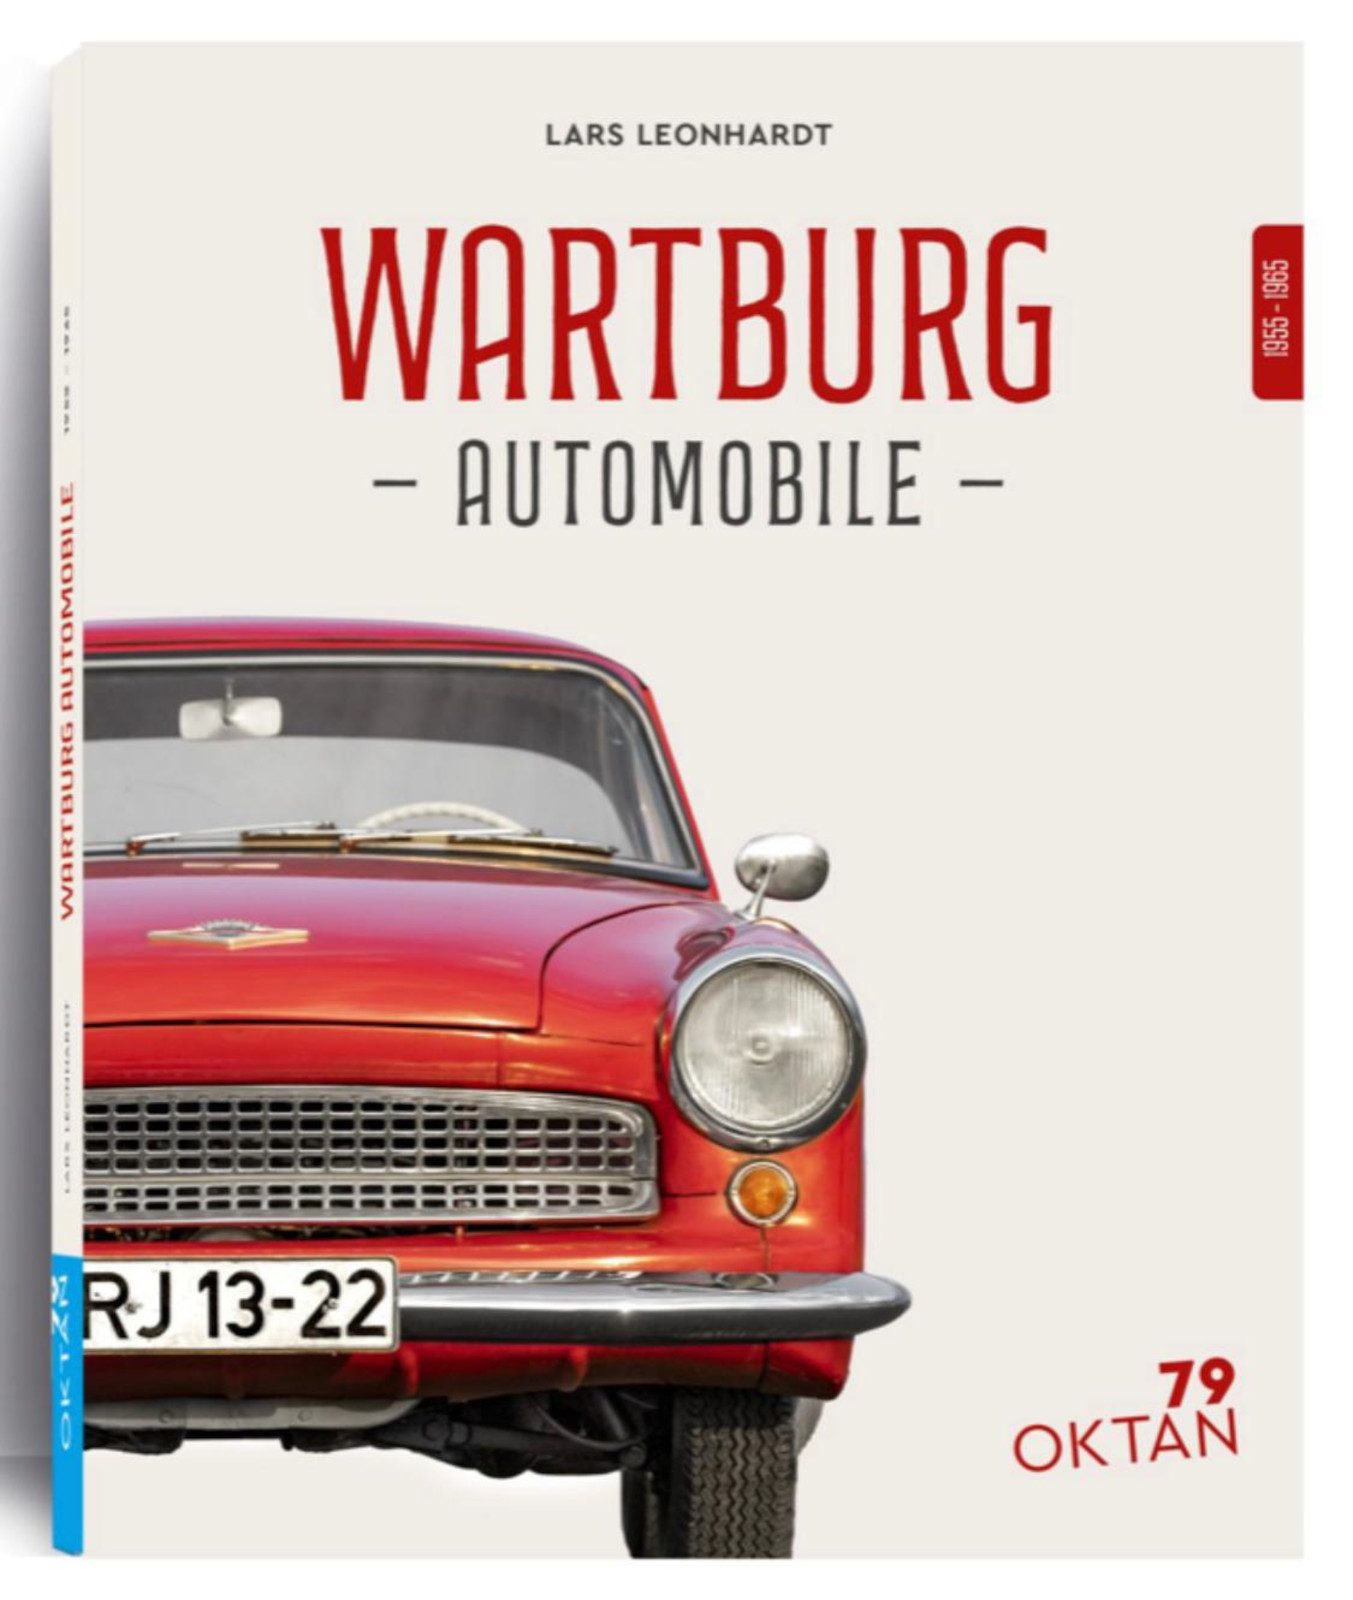 Buchvorstellung: Wartburg Automobile